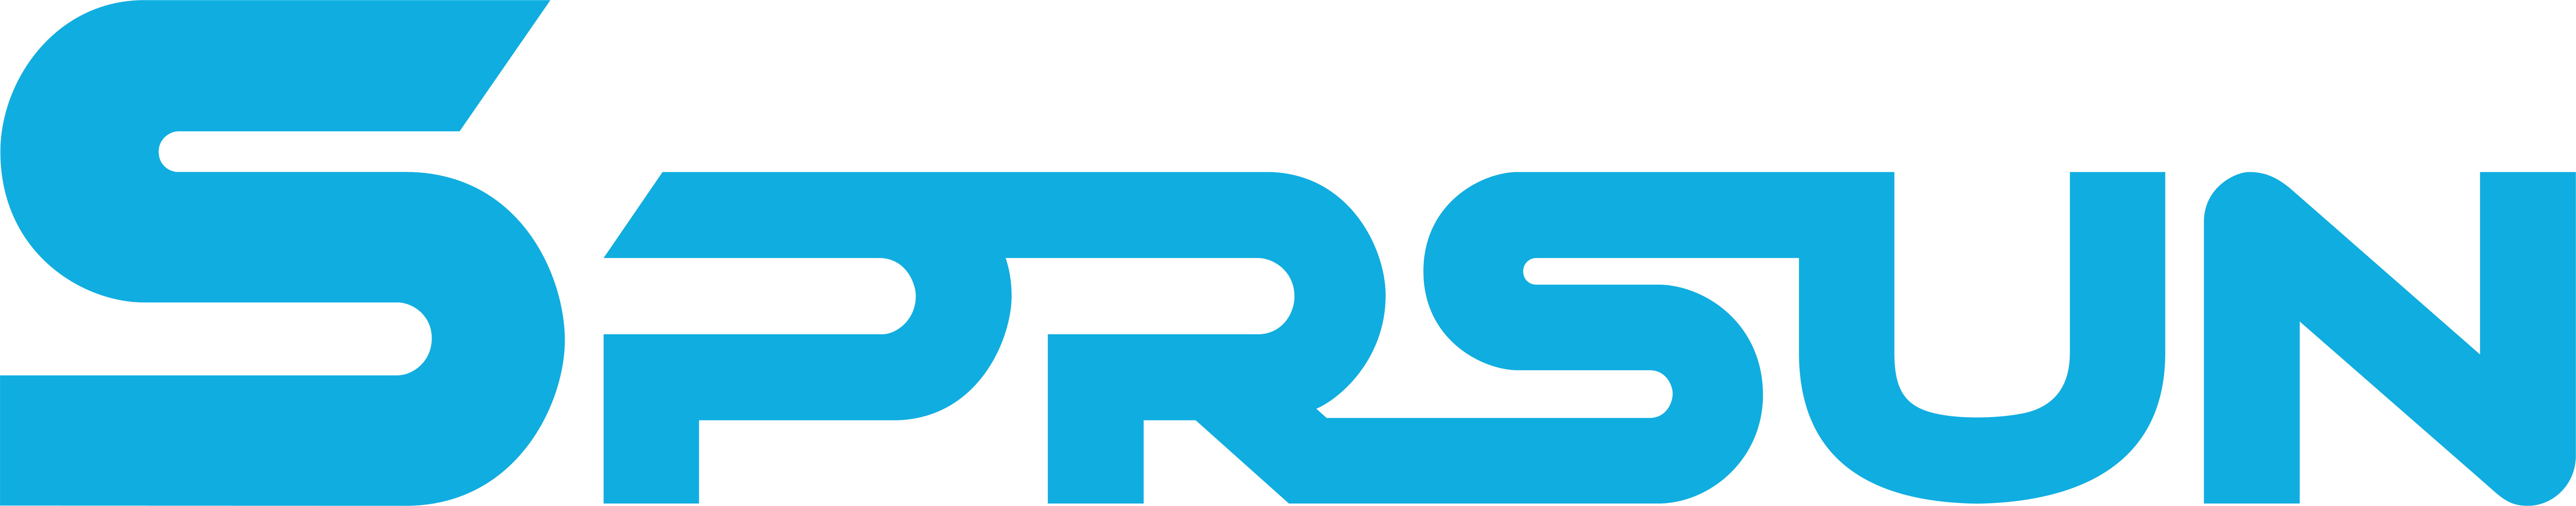 Логотип SPRSUN